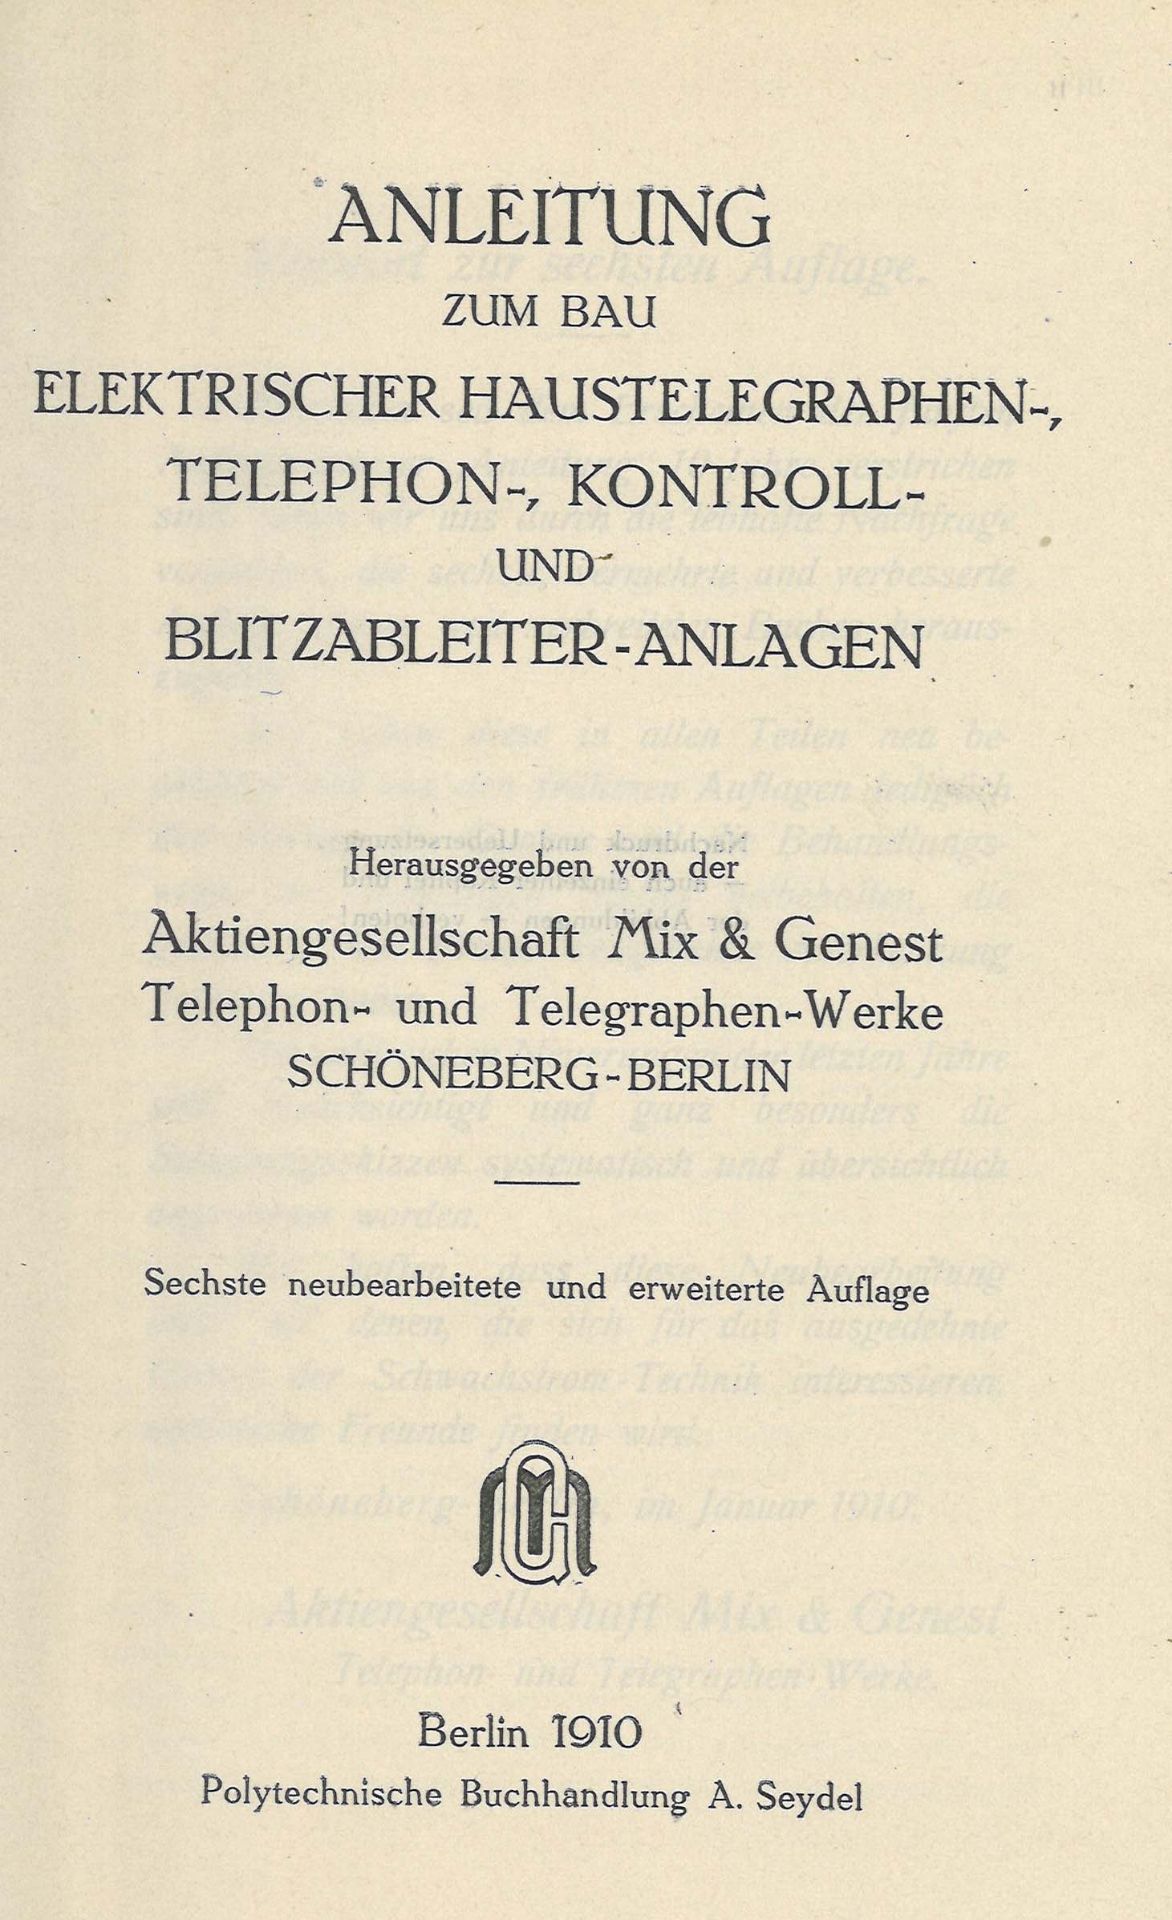 Anleitung zum Bau von Schwachstrom-Anlagen, AG mix & Genest, 1910 - Bild 2 aus 3